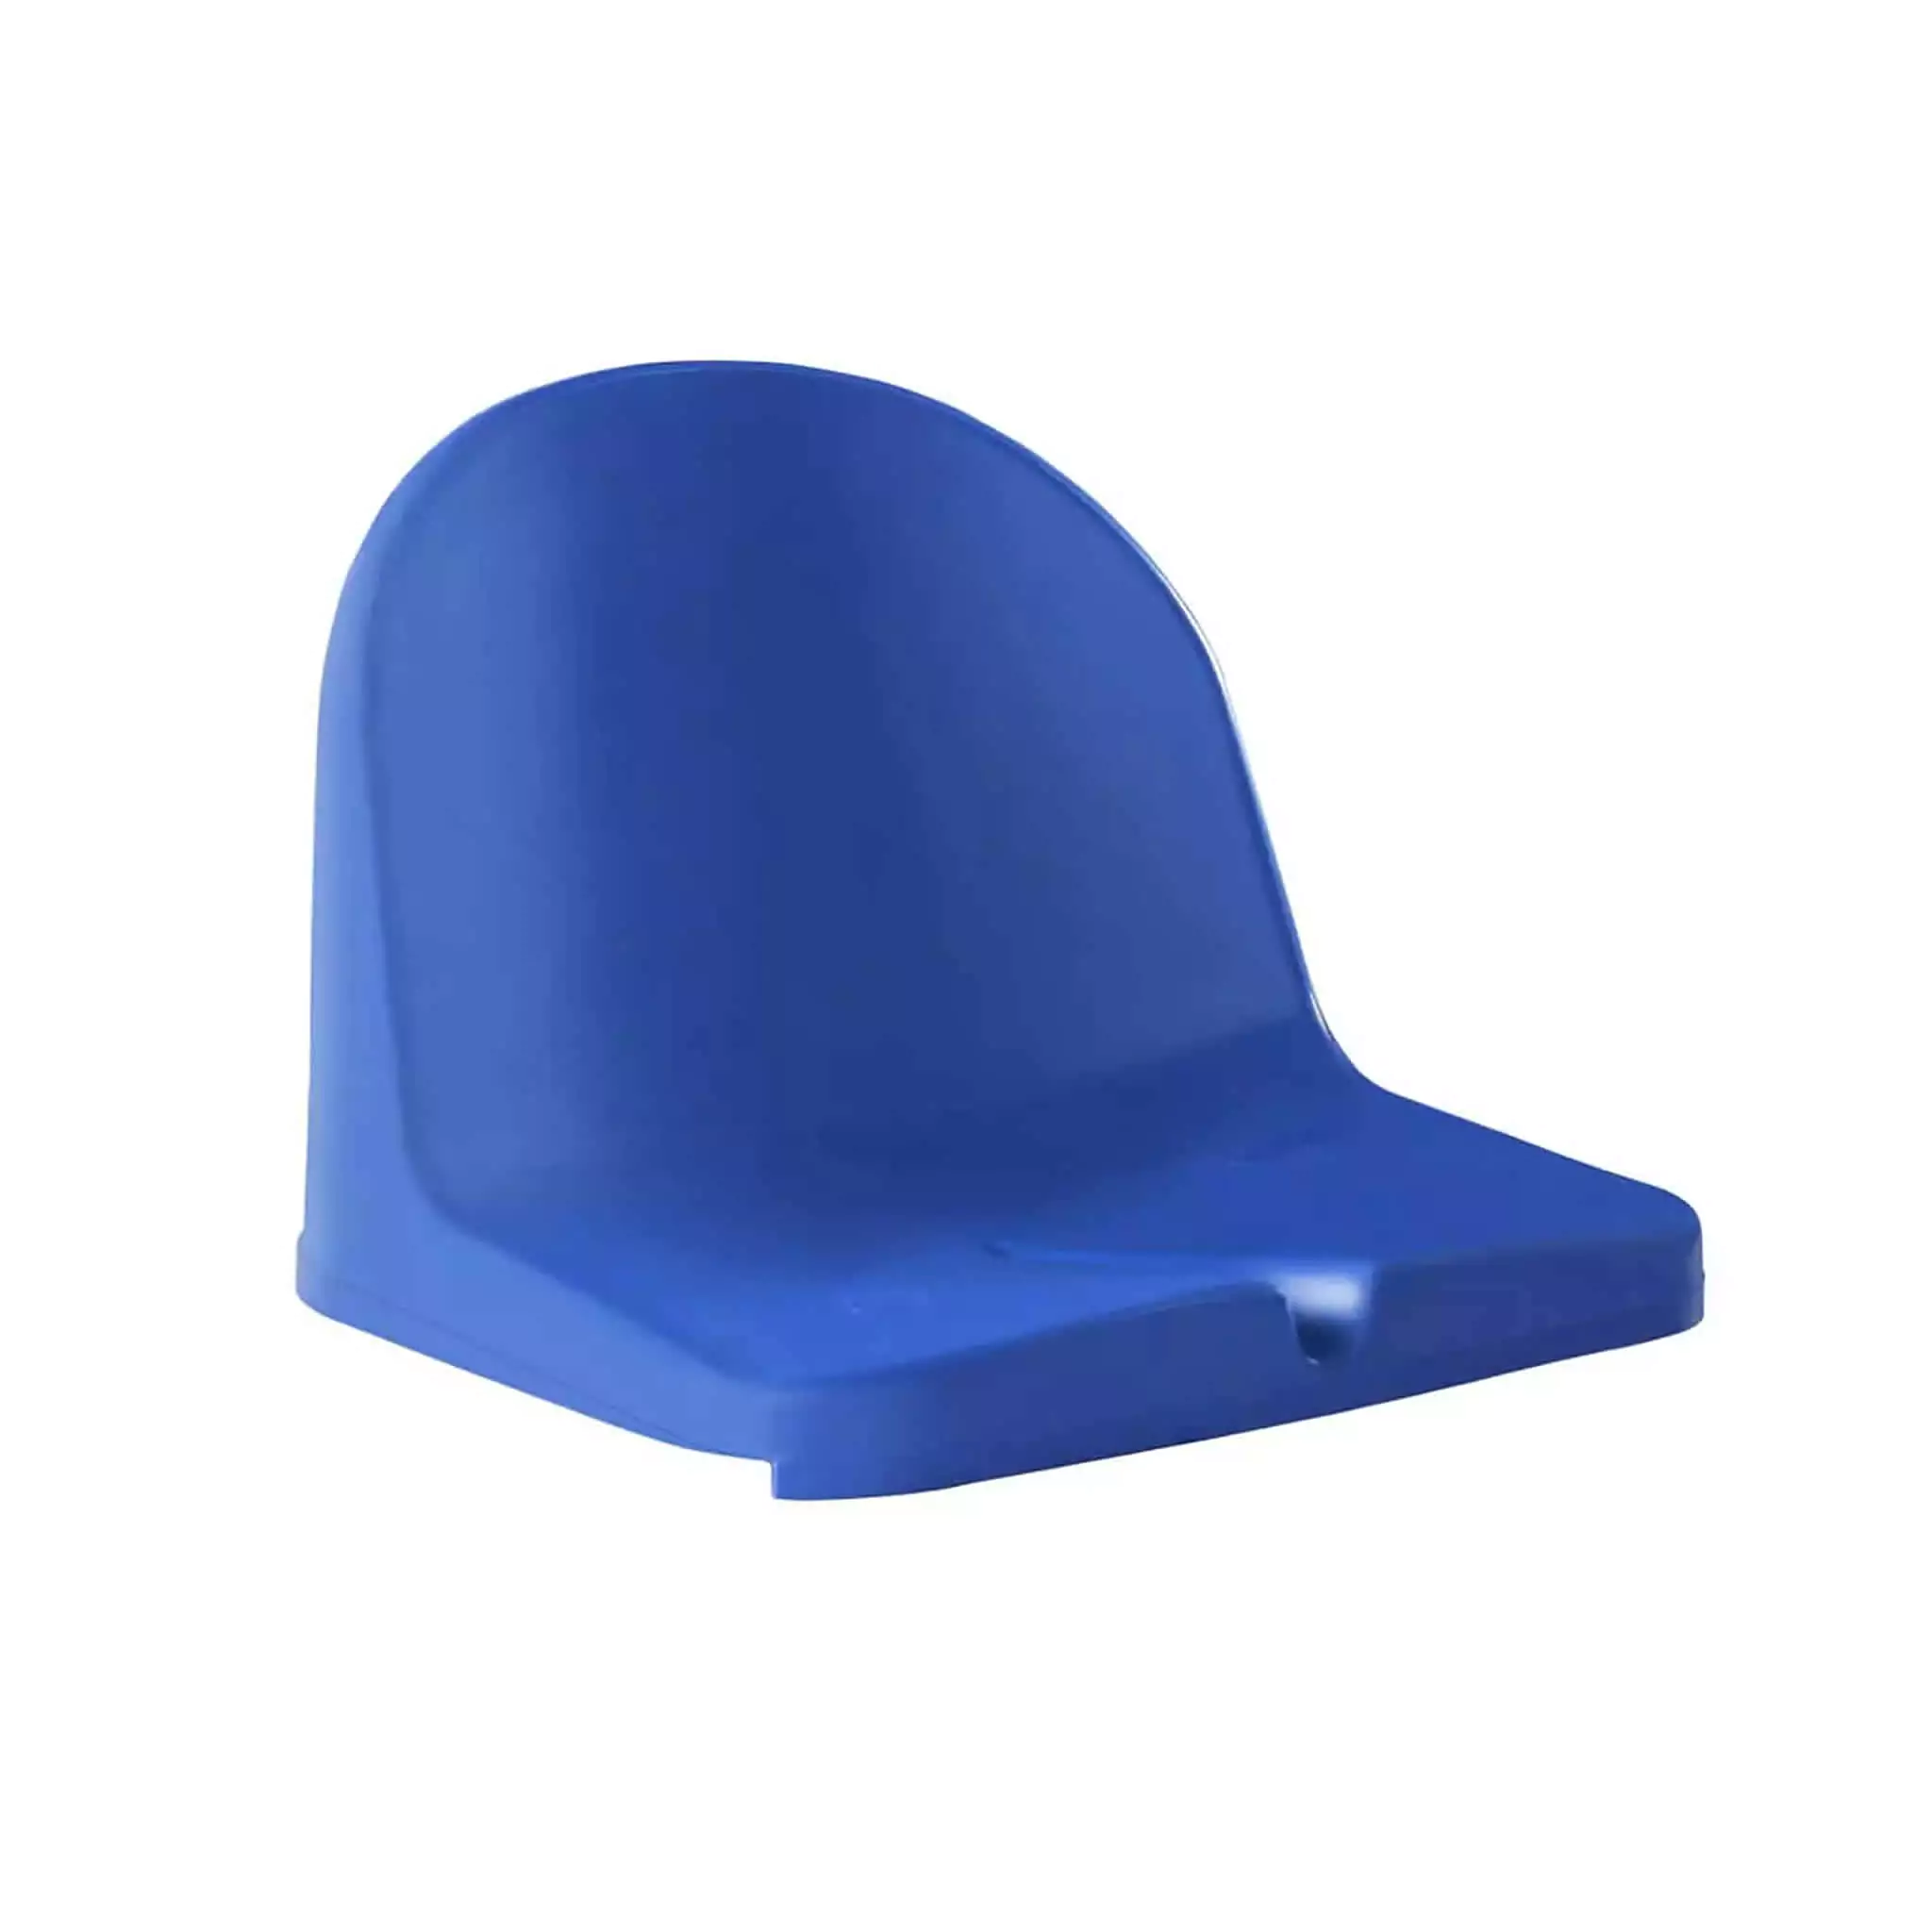 Simko Seating Product Monoblock Stadium Seat Azurit 01